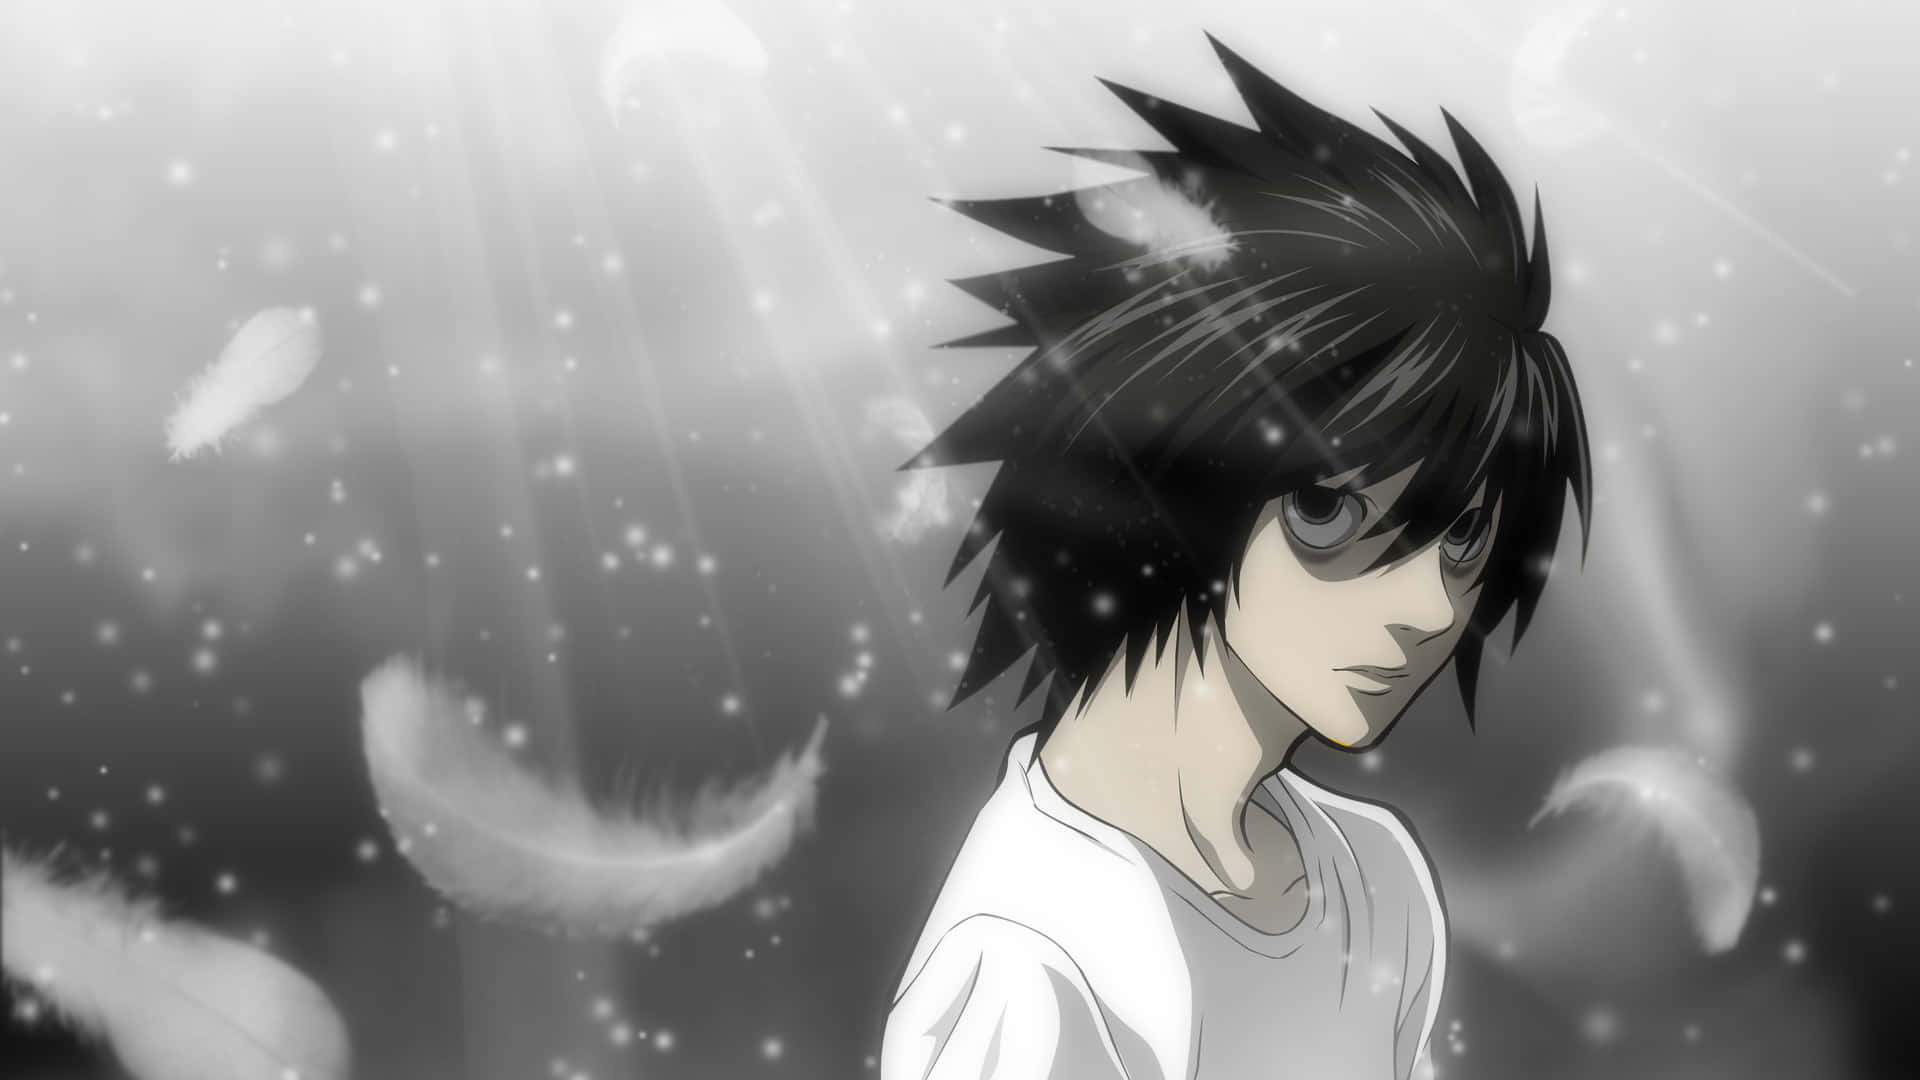 Lightyagami É O Protagonista Da Série De Mangá E Anime Death Note.